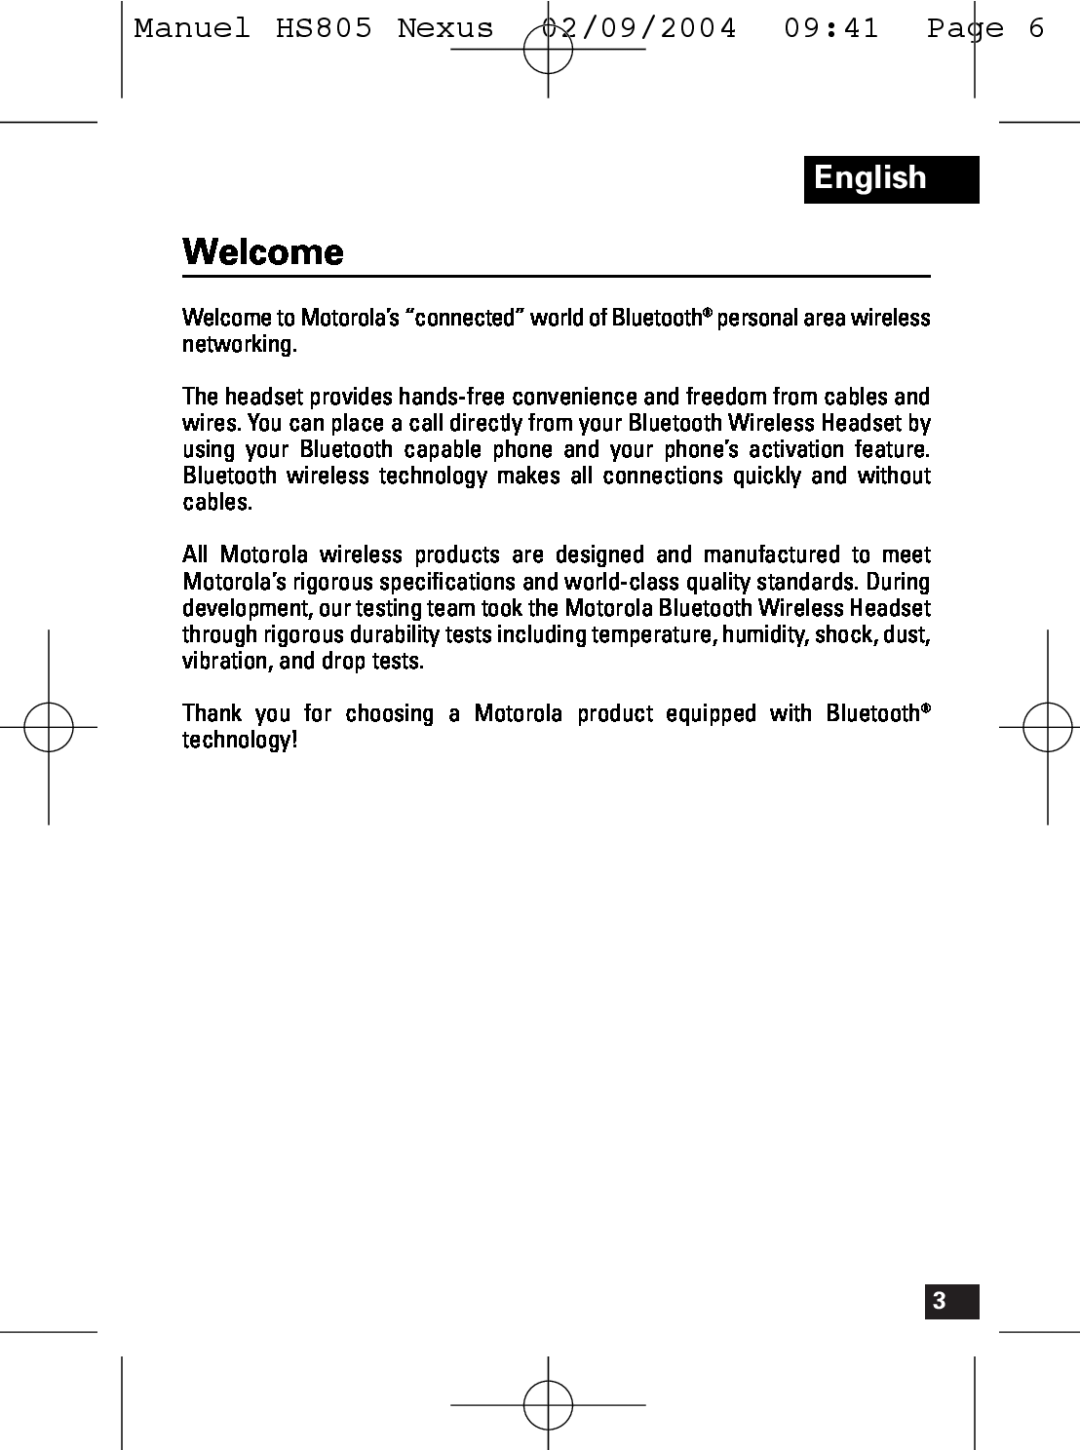 Motorola manual Welcome, English, Manuel HS805 Nexus 02/09/2004 09 41 Page 